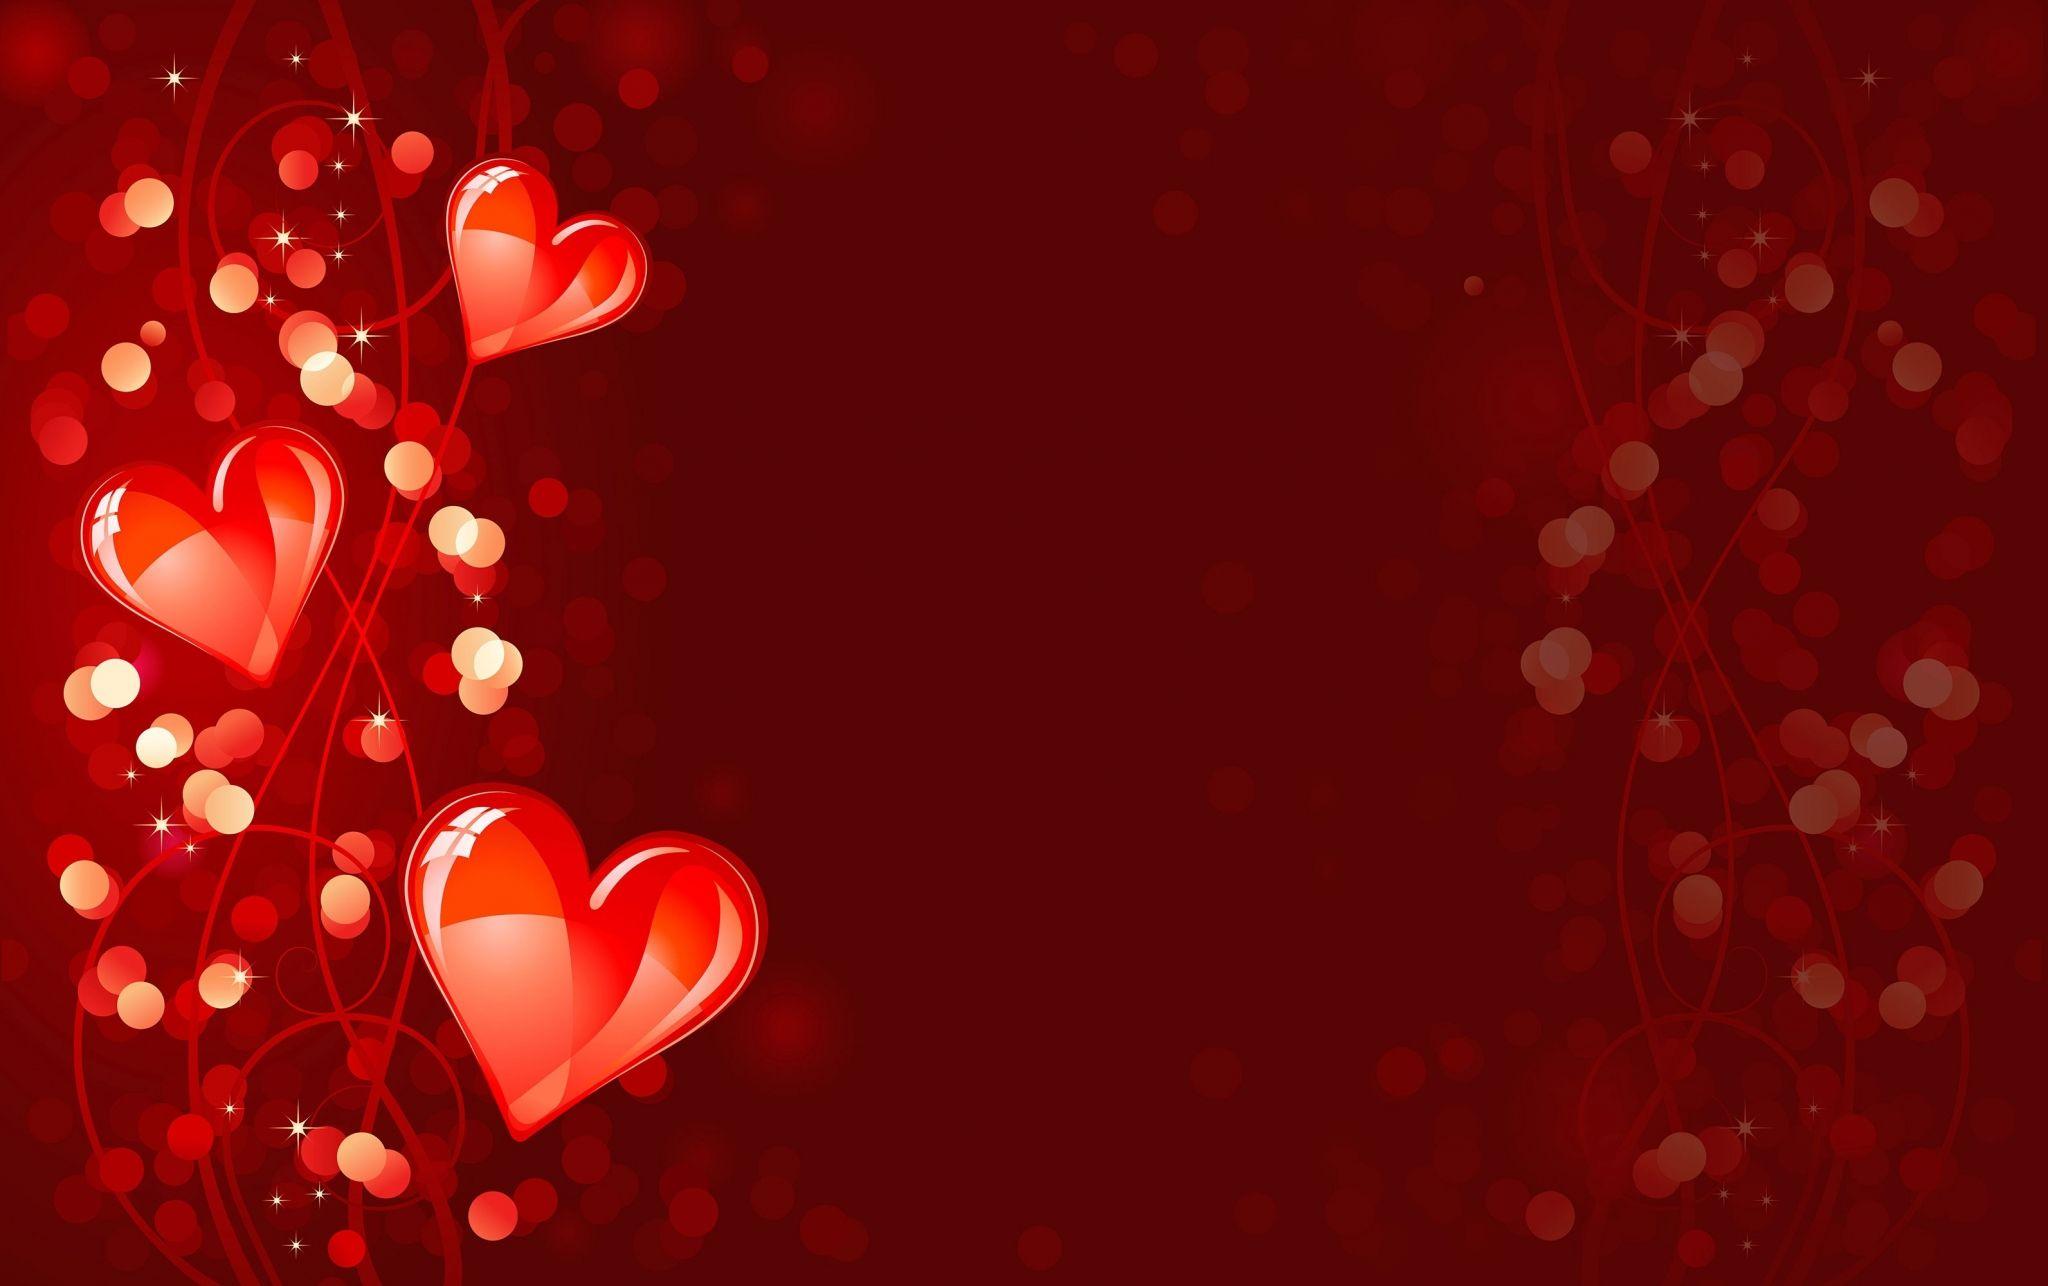 valentines day wallpaper pack 1080p HD. Valentine